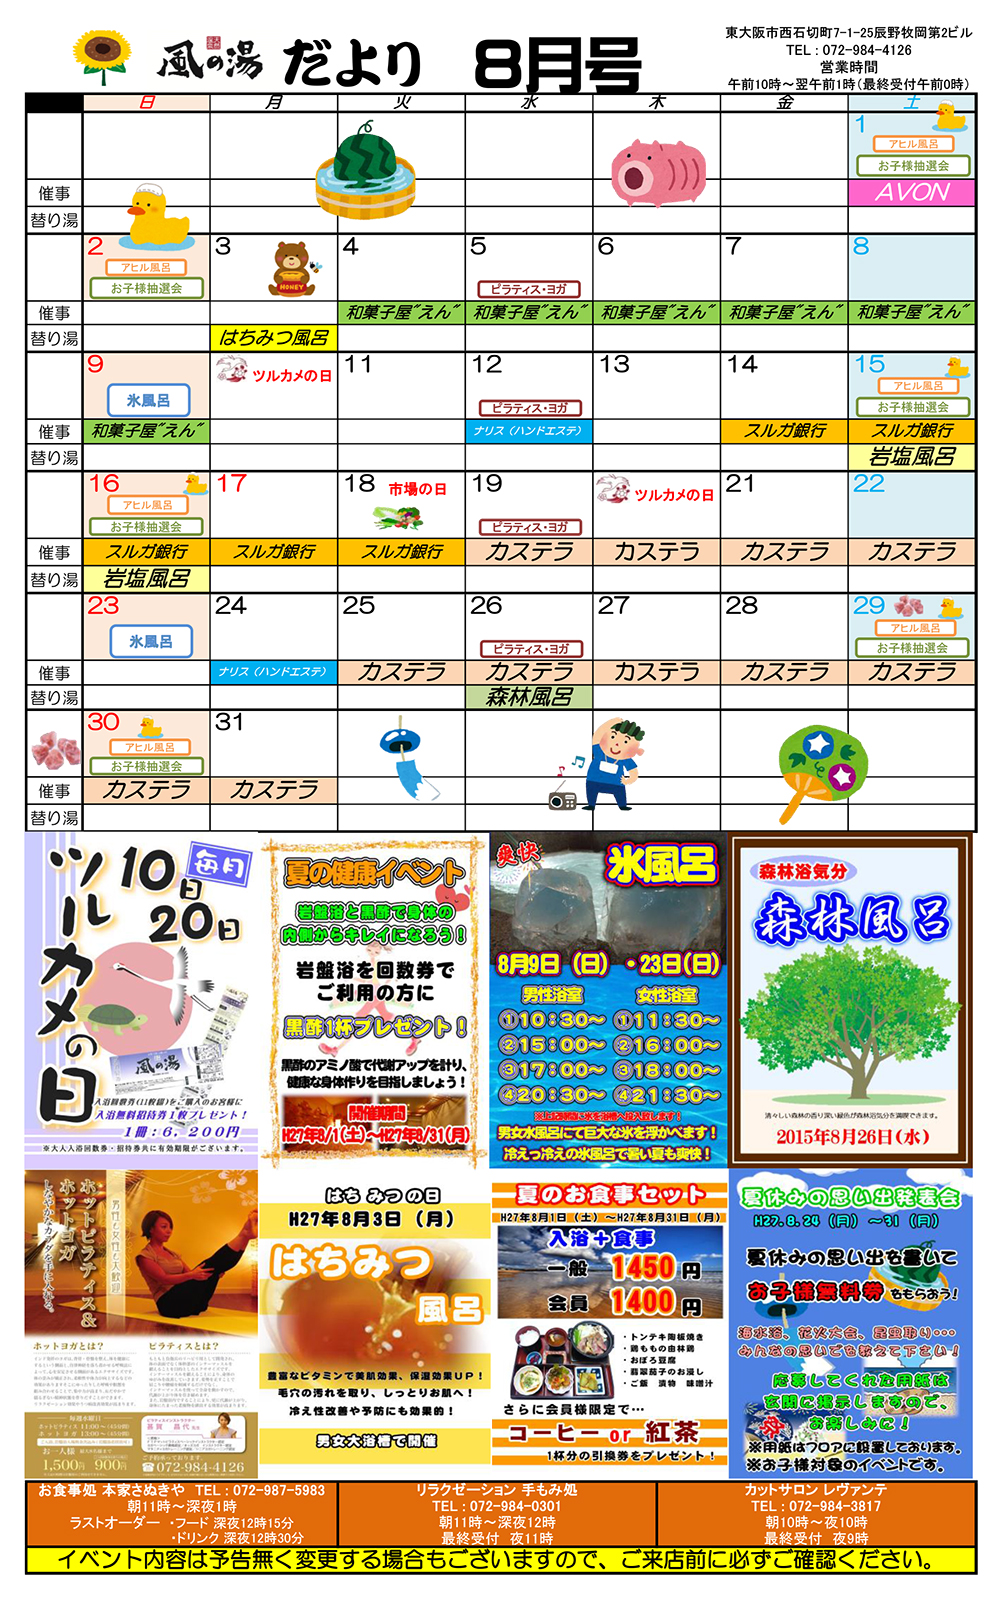 イベントカレンダー15年8月号 風の湯新石切店